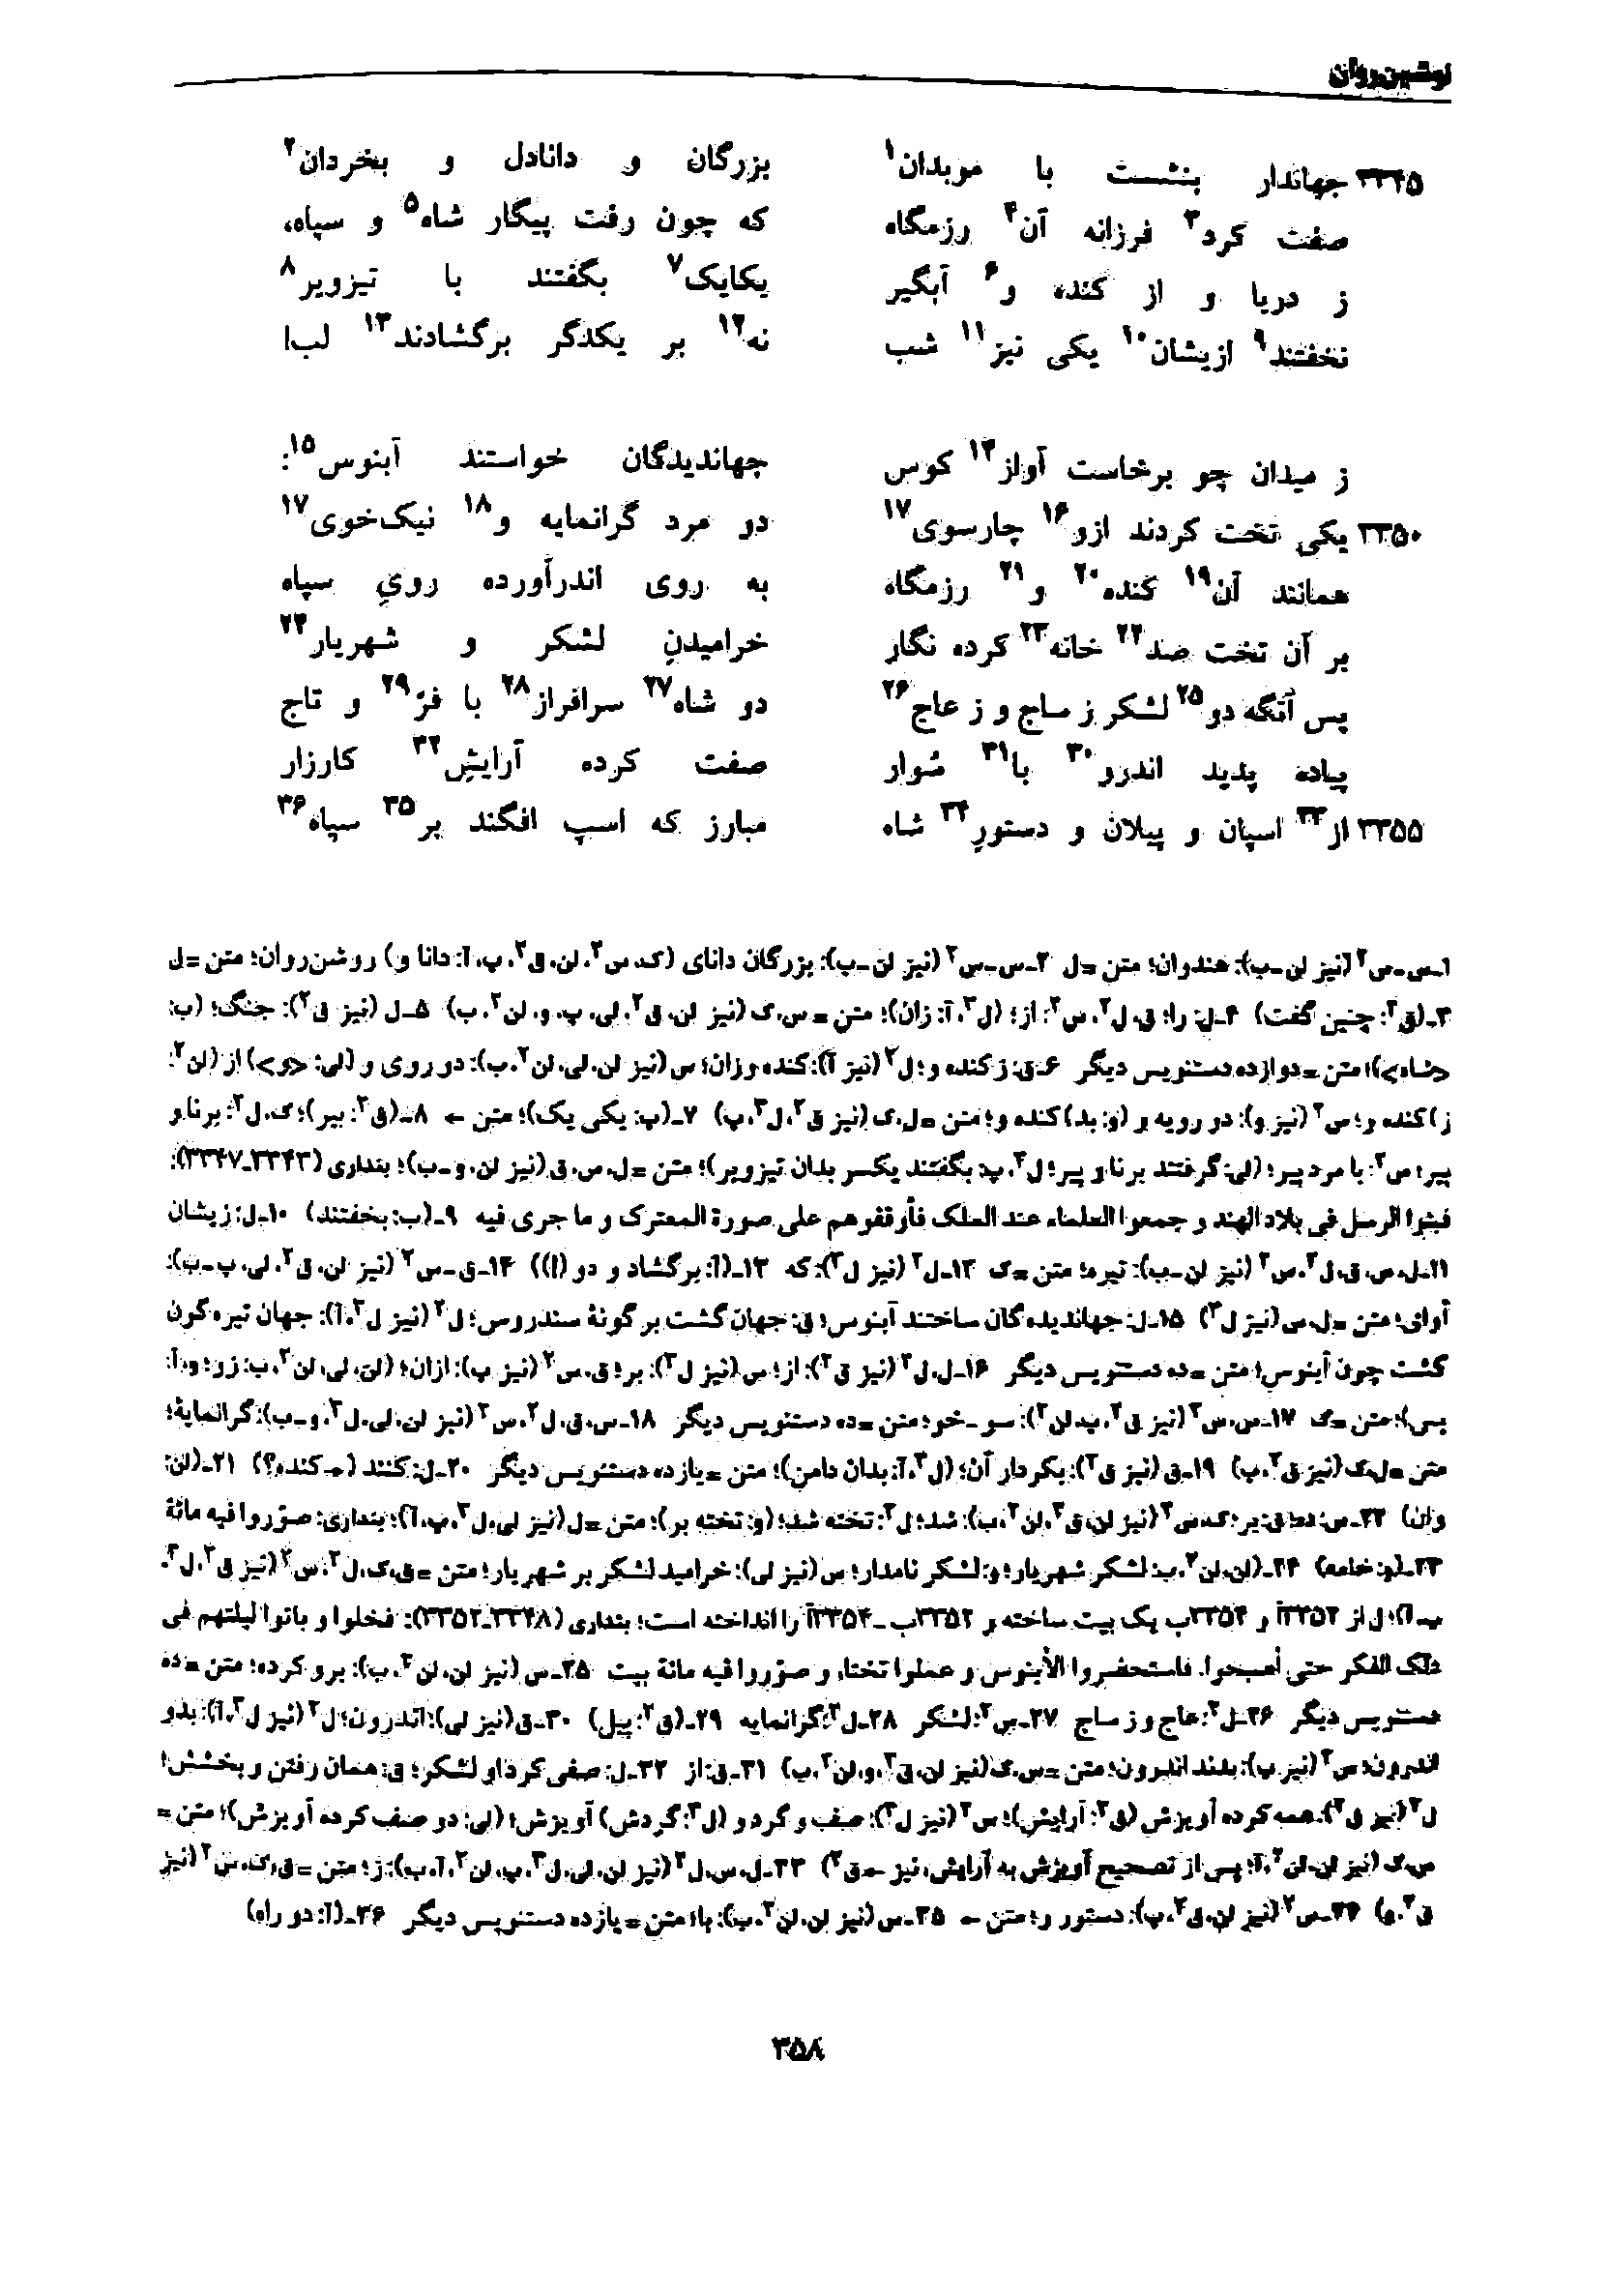 vol. 7, p. 358